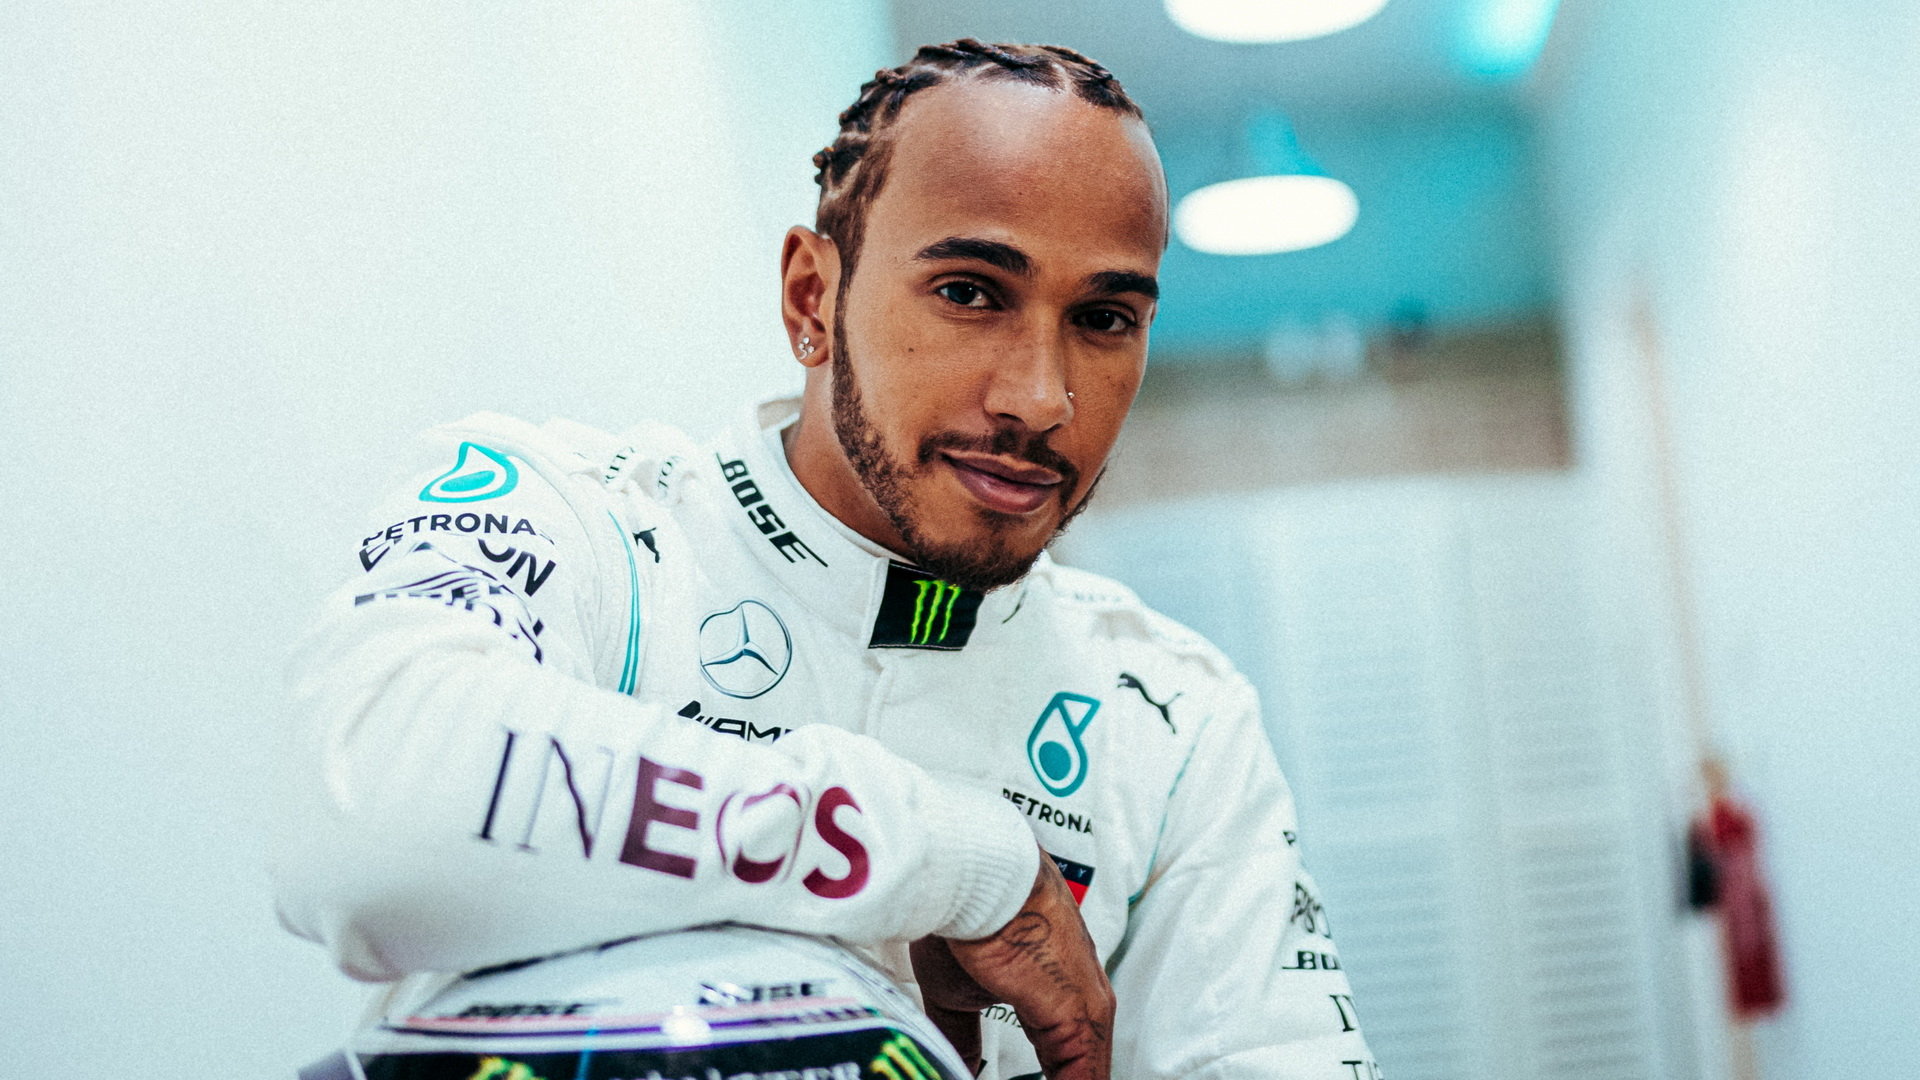 Lewis Hamilton je po prvním dnu vděčný týmu za dobrou práci